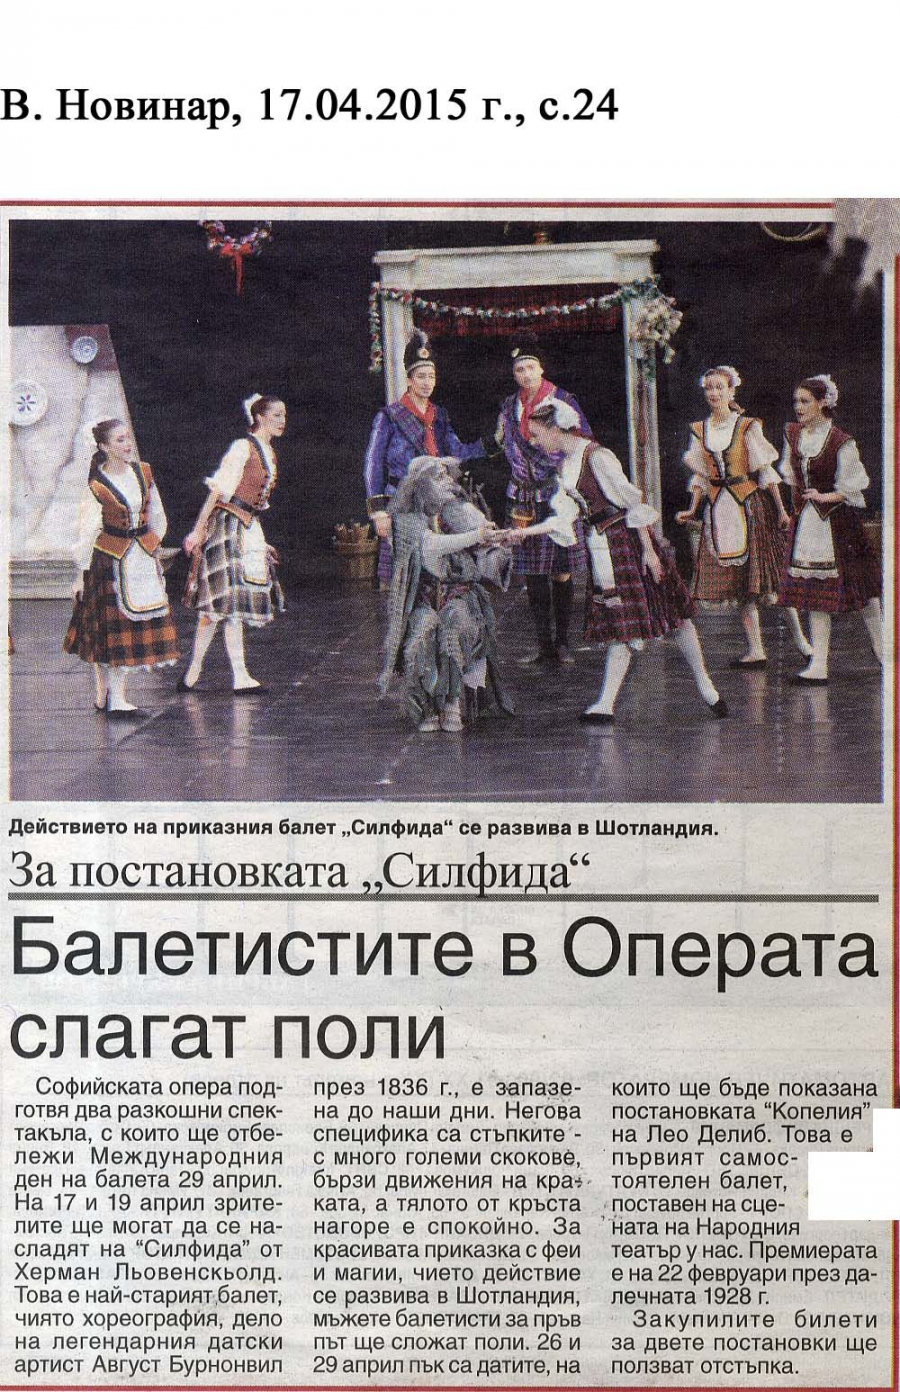 Балетистите в Операта слагат поли - в.Новинар - 17.04.2015